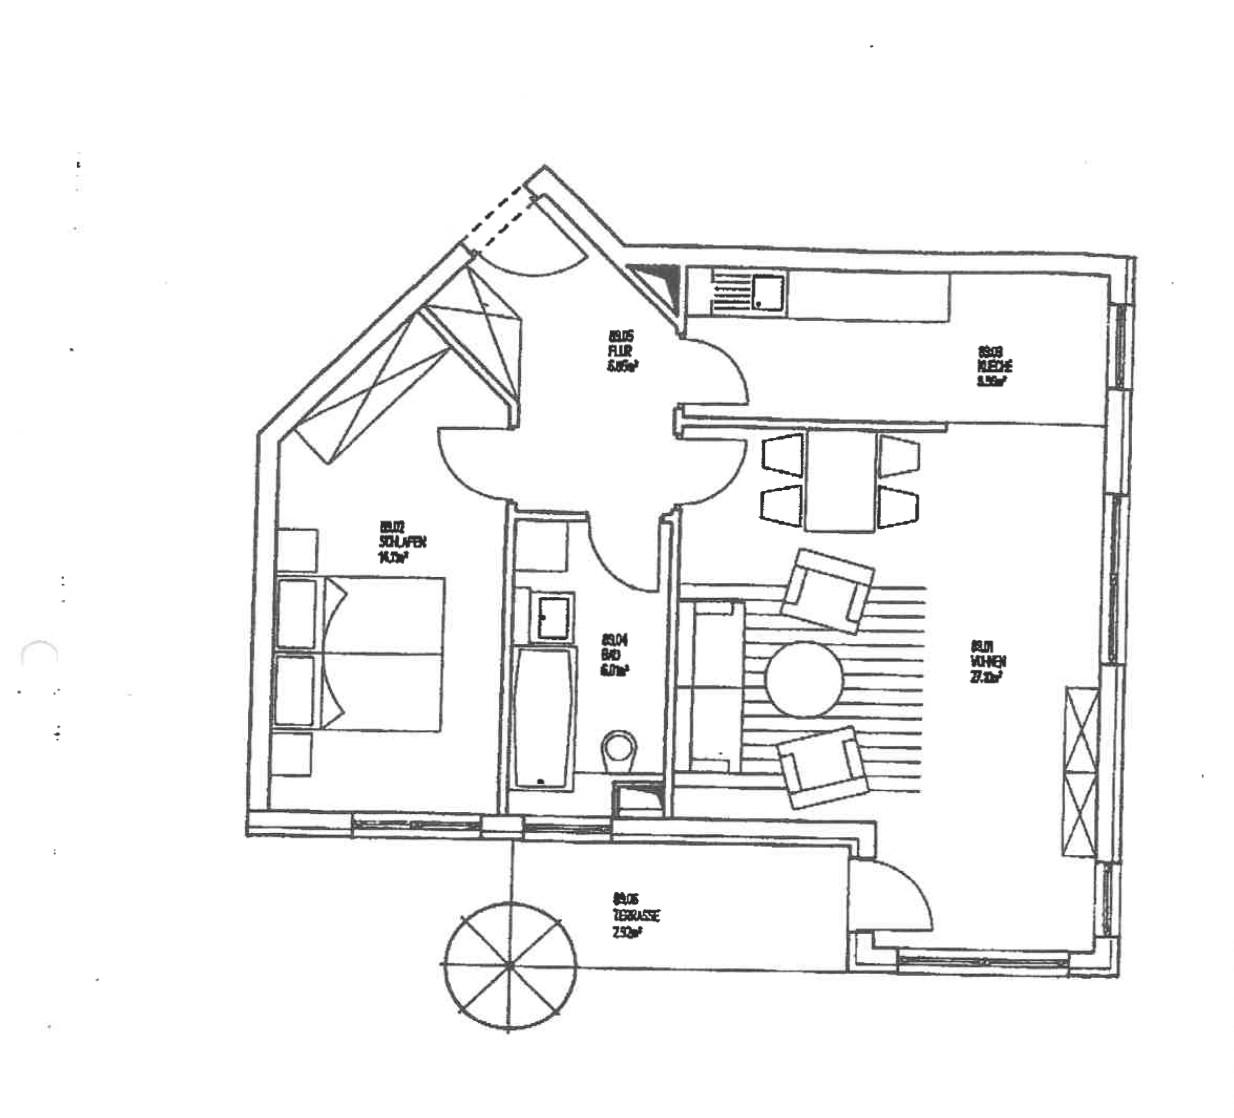 Gepflegte 2-Zimmer-Wohnung mit Terrasse – Ihr stilvolles Zuhause in grüner Umgebung! - Grundriss